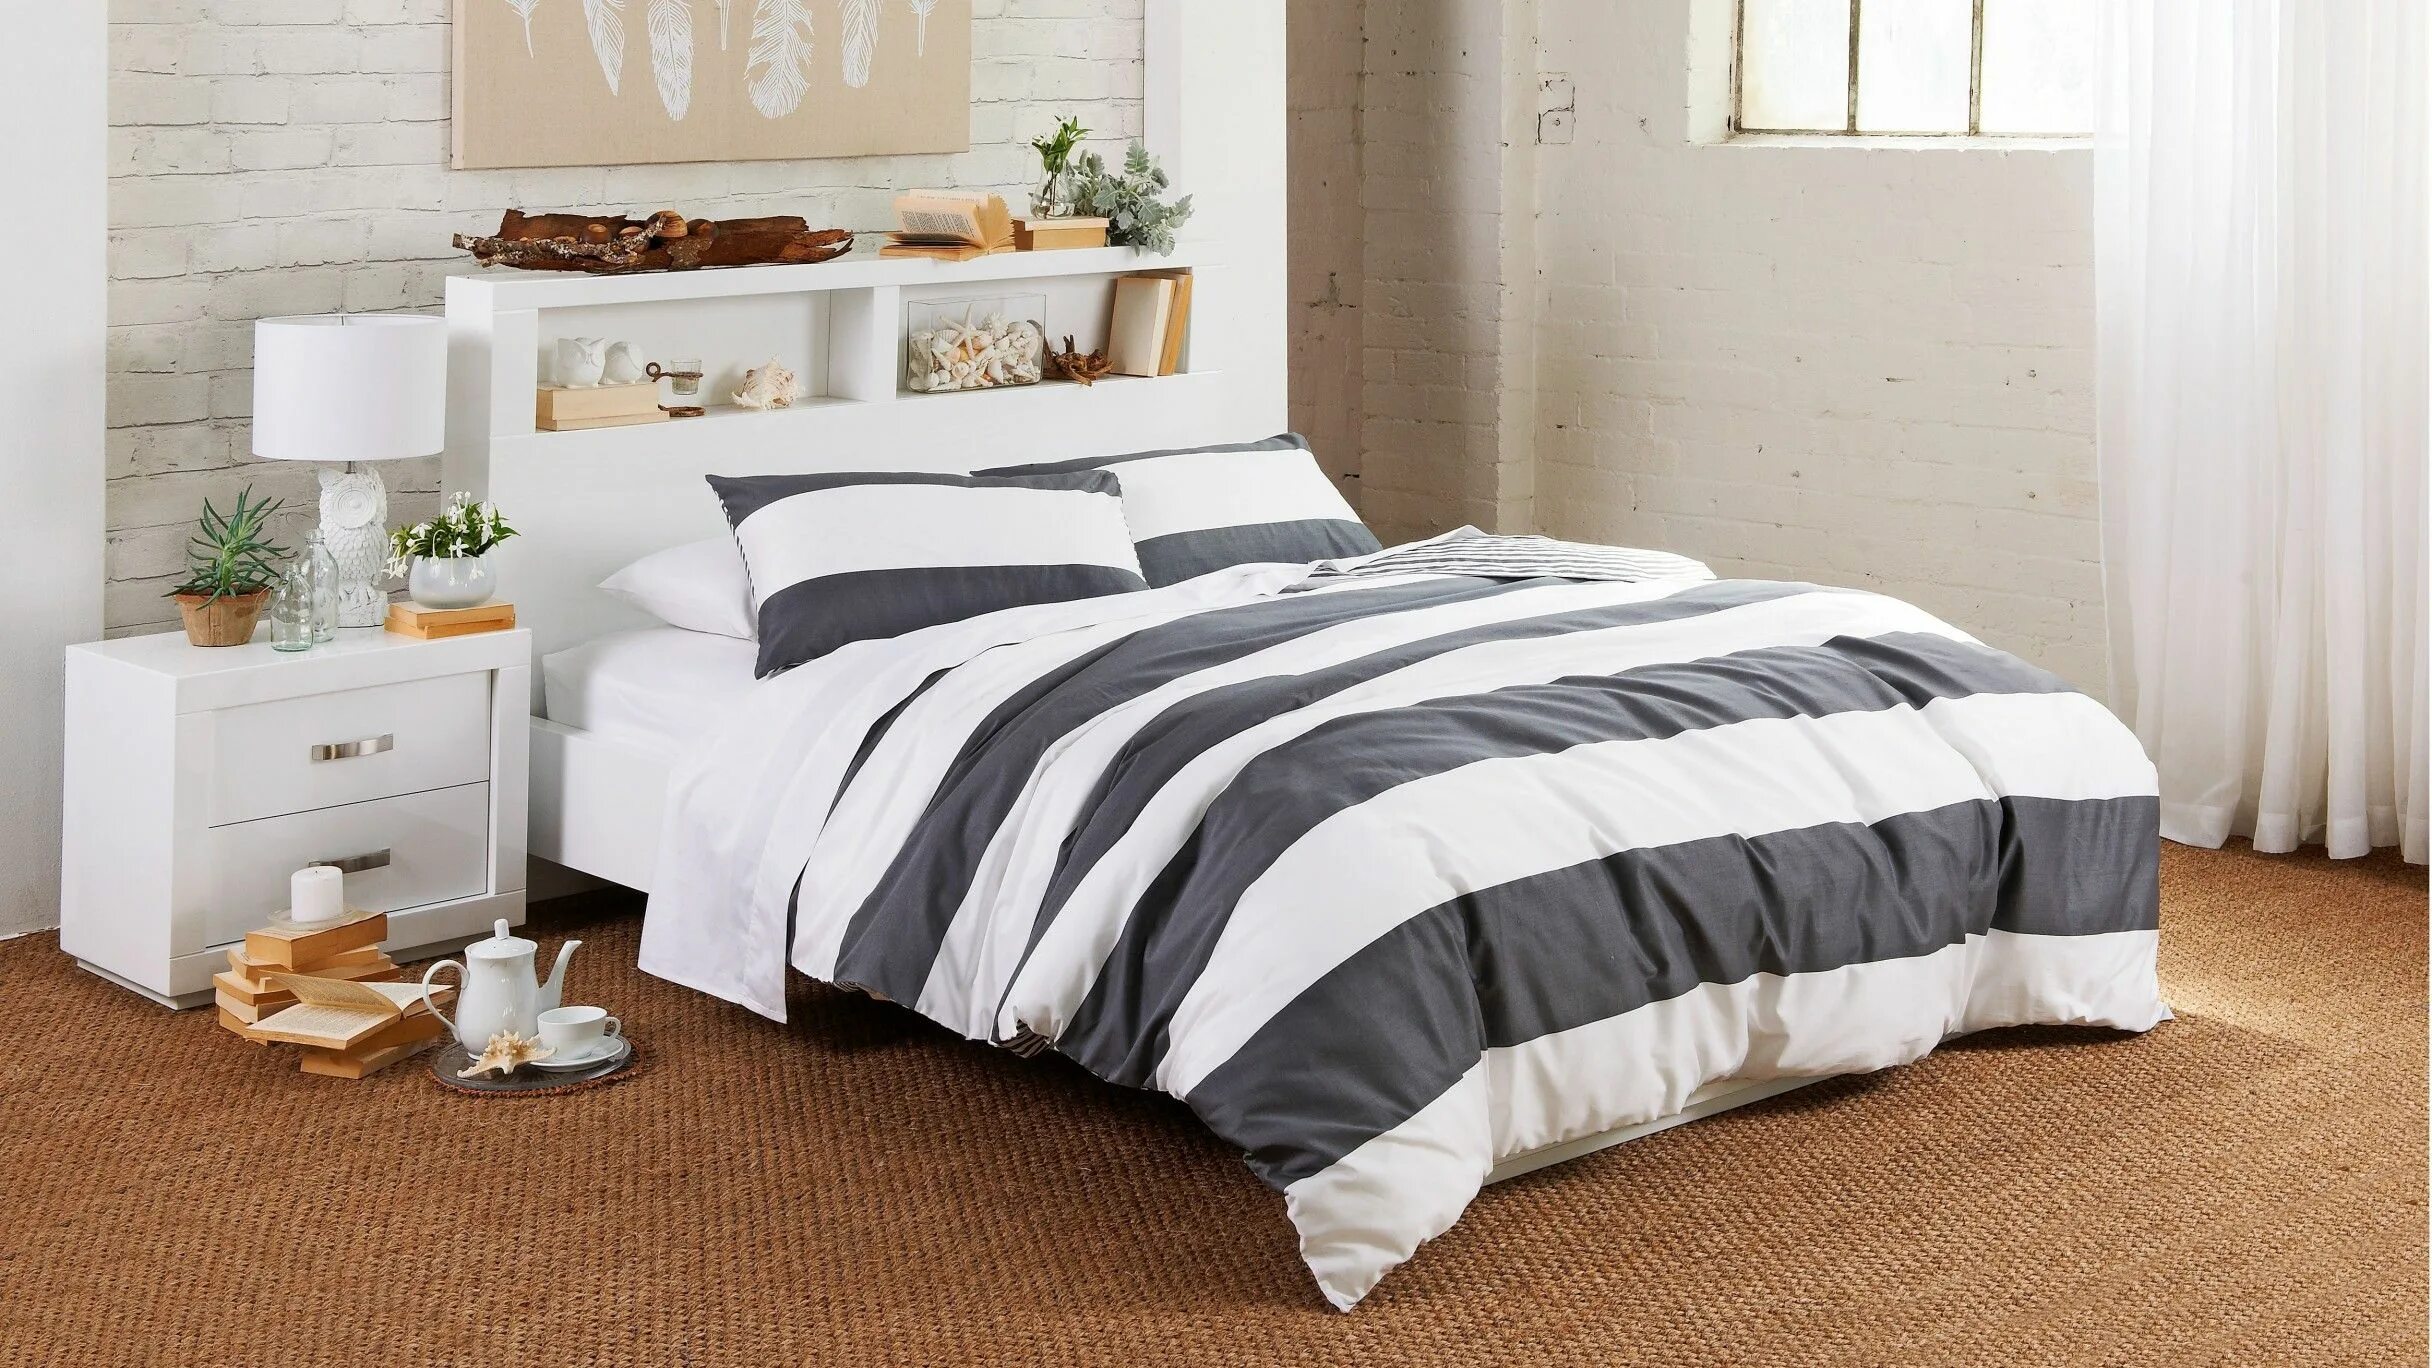 Постельное белье lines. Bed Cover. Одеяло серое страйп. Bamboo Linen постельное. Простыня классическая.